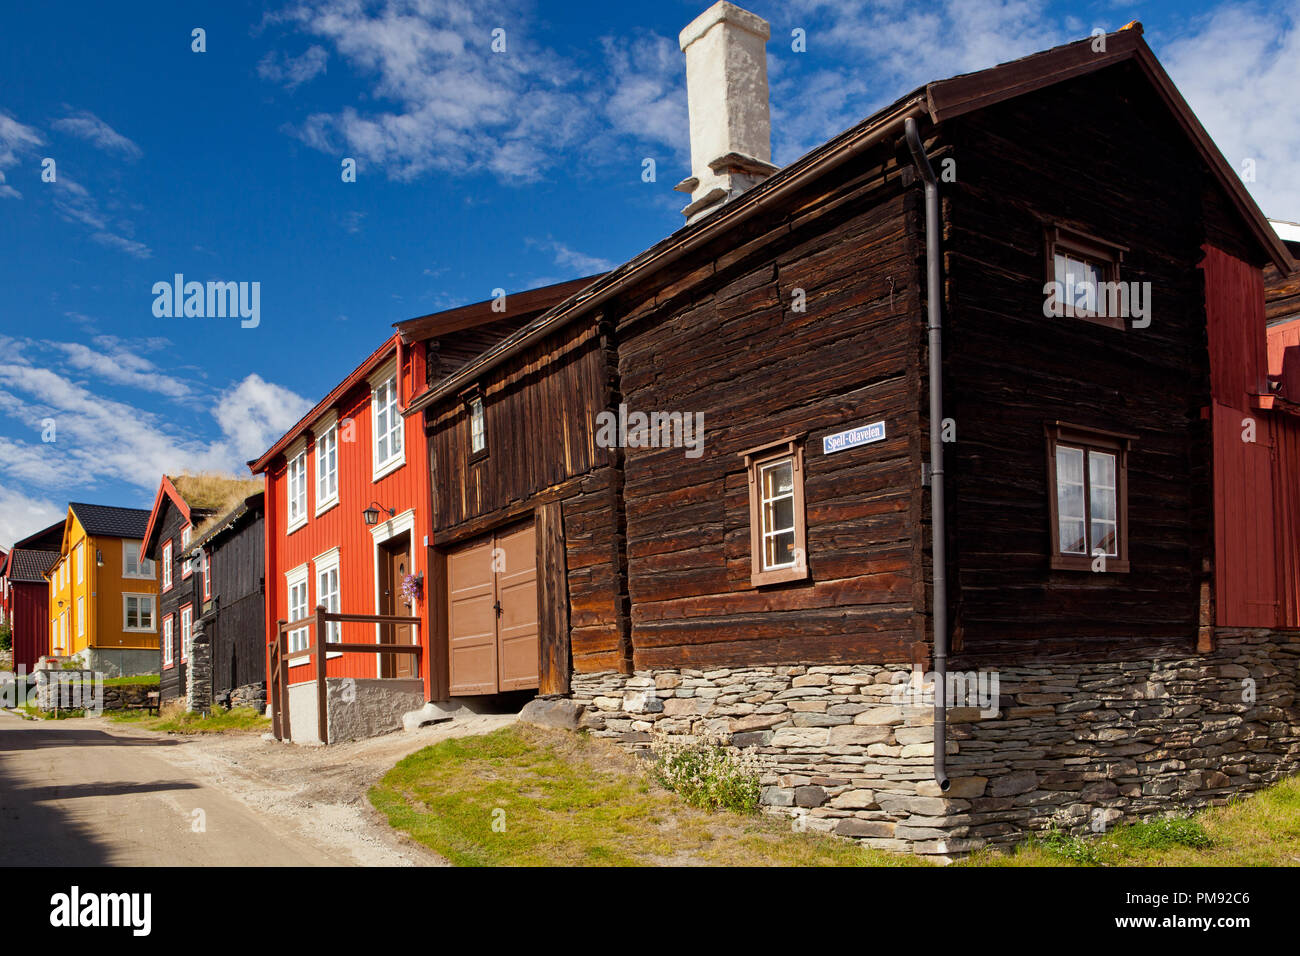 Rundgang durch das UNESCO Weltkulturerbe Röros, einer alten Bergbausiedlung in Norwegen Stock Photo